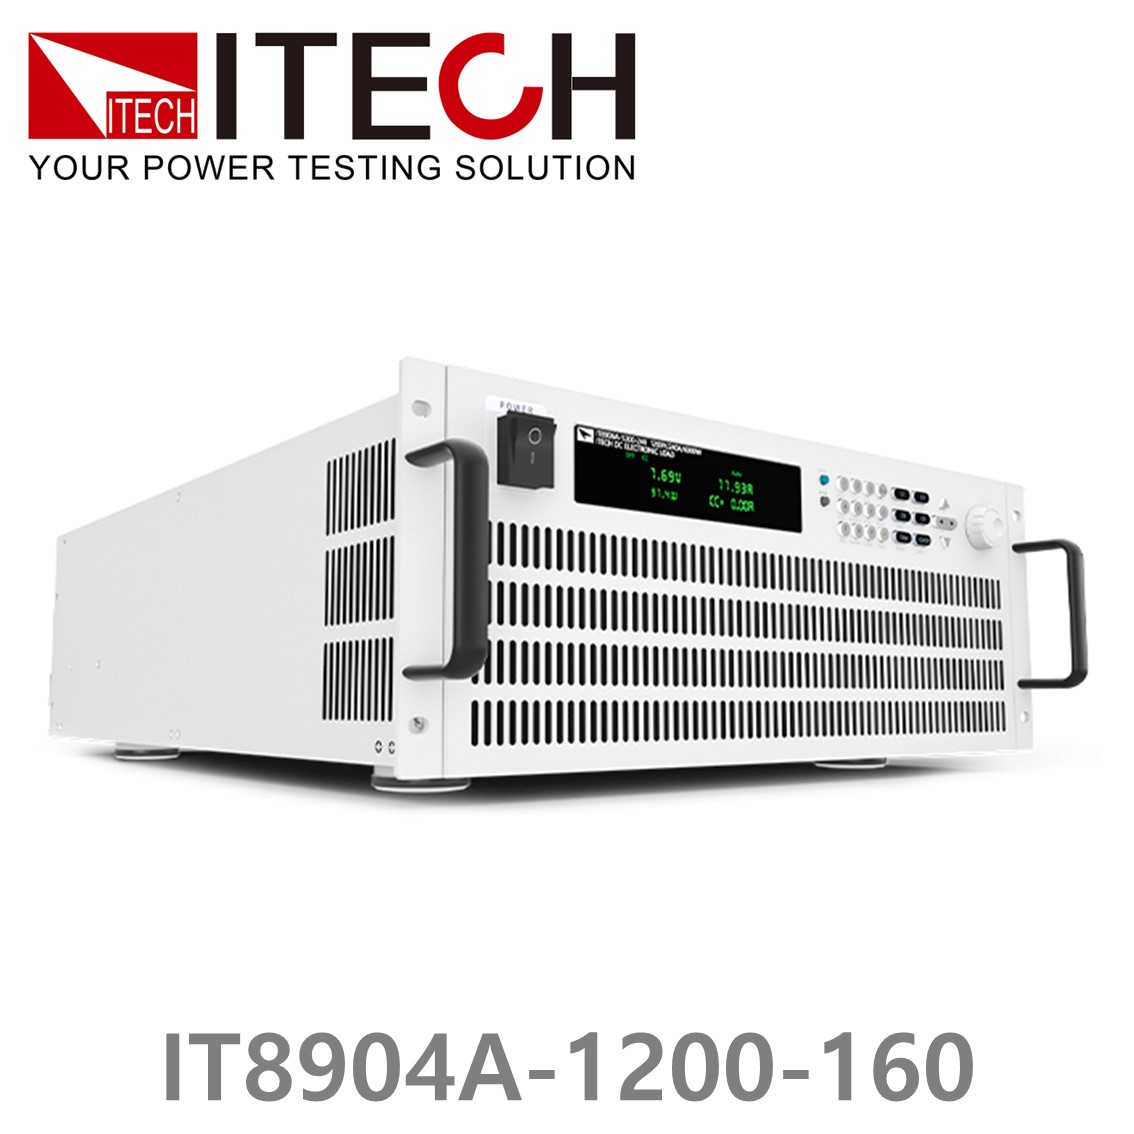 [ ITECH ] IT8904A-1200-160  고성능 고전력 DC 전자로드 1200V/160A/4kW (4U)